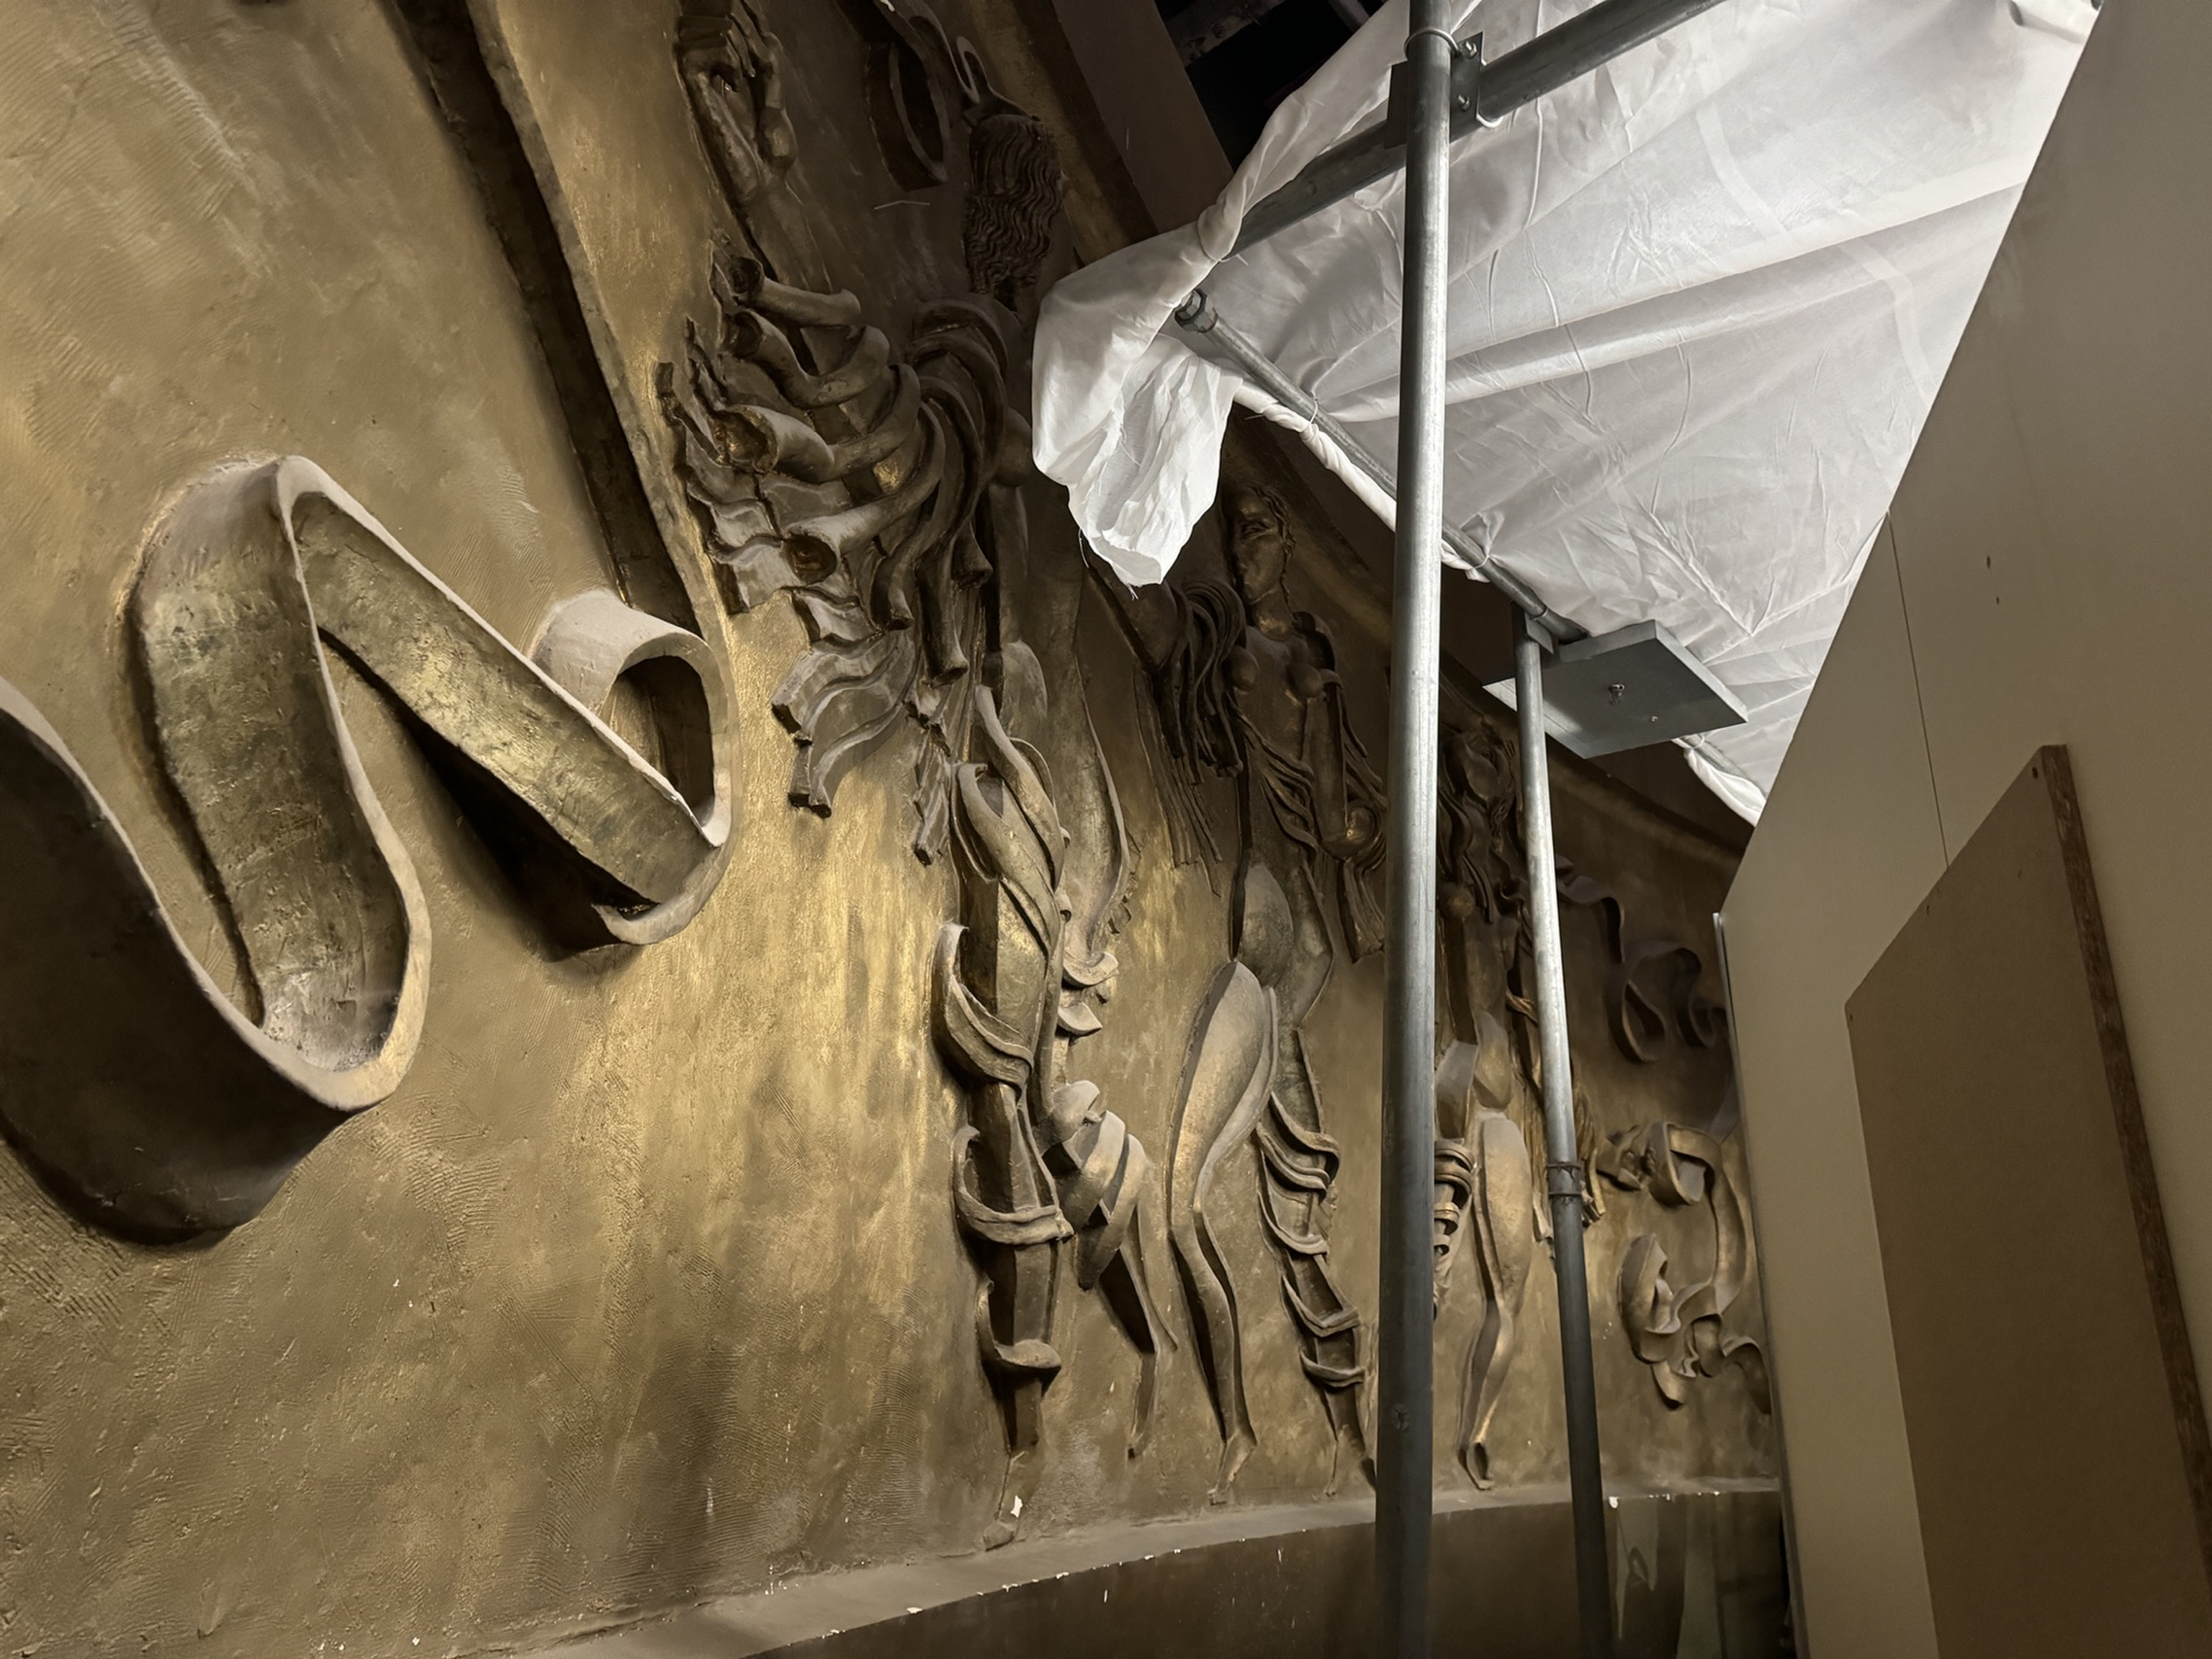 un relief oublié du sculpteur zadkine quittera la rue neuve pour le musée juif de belgique